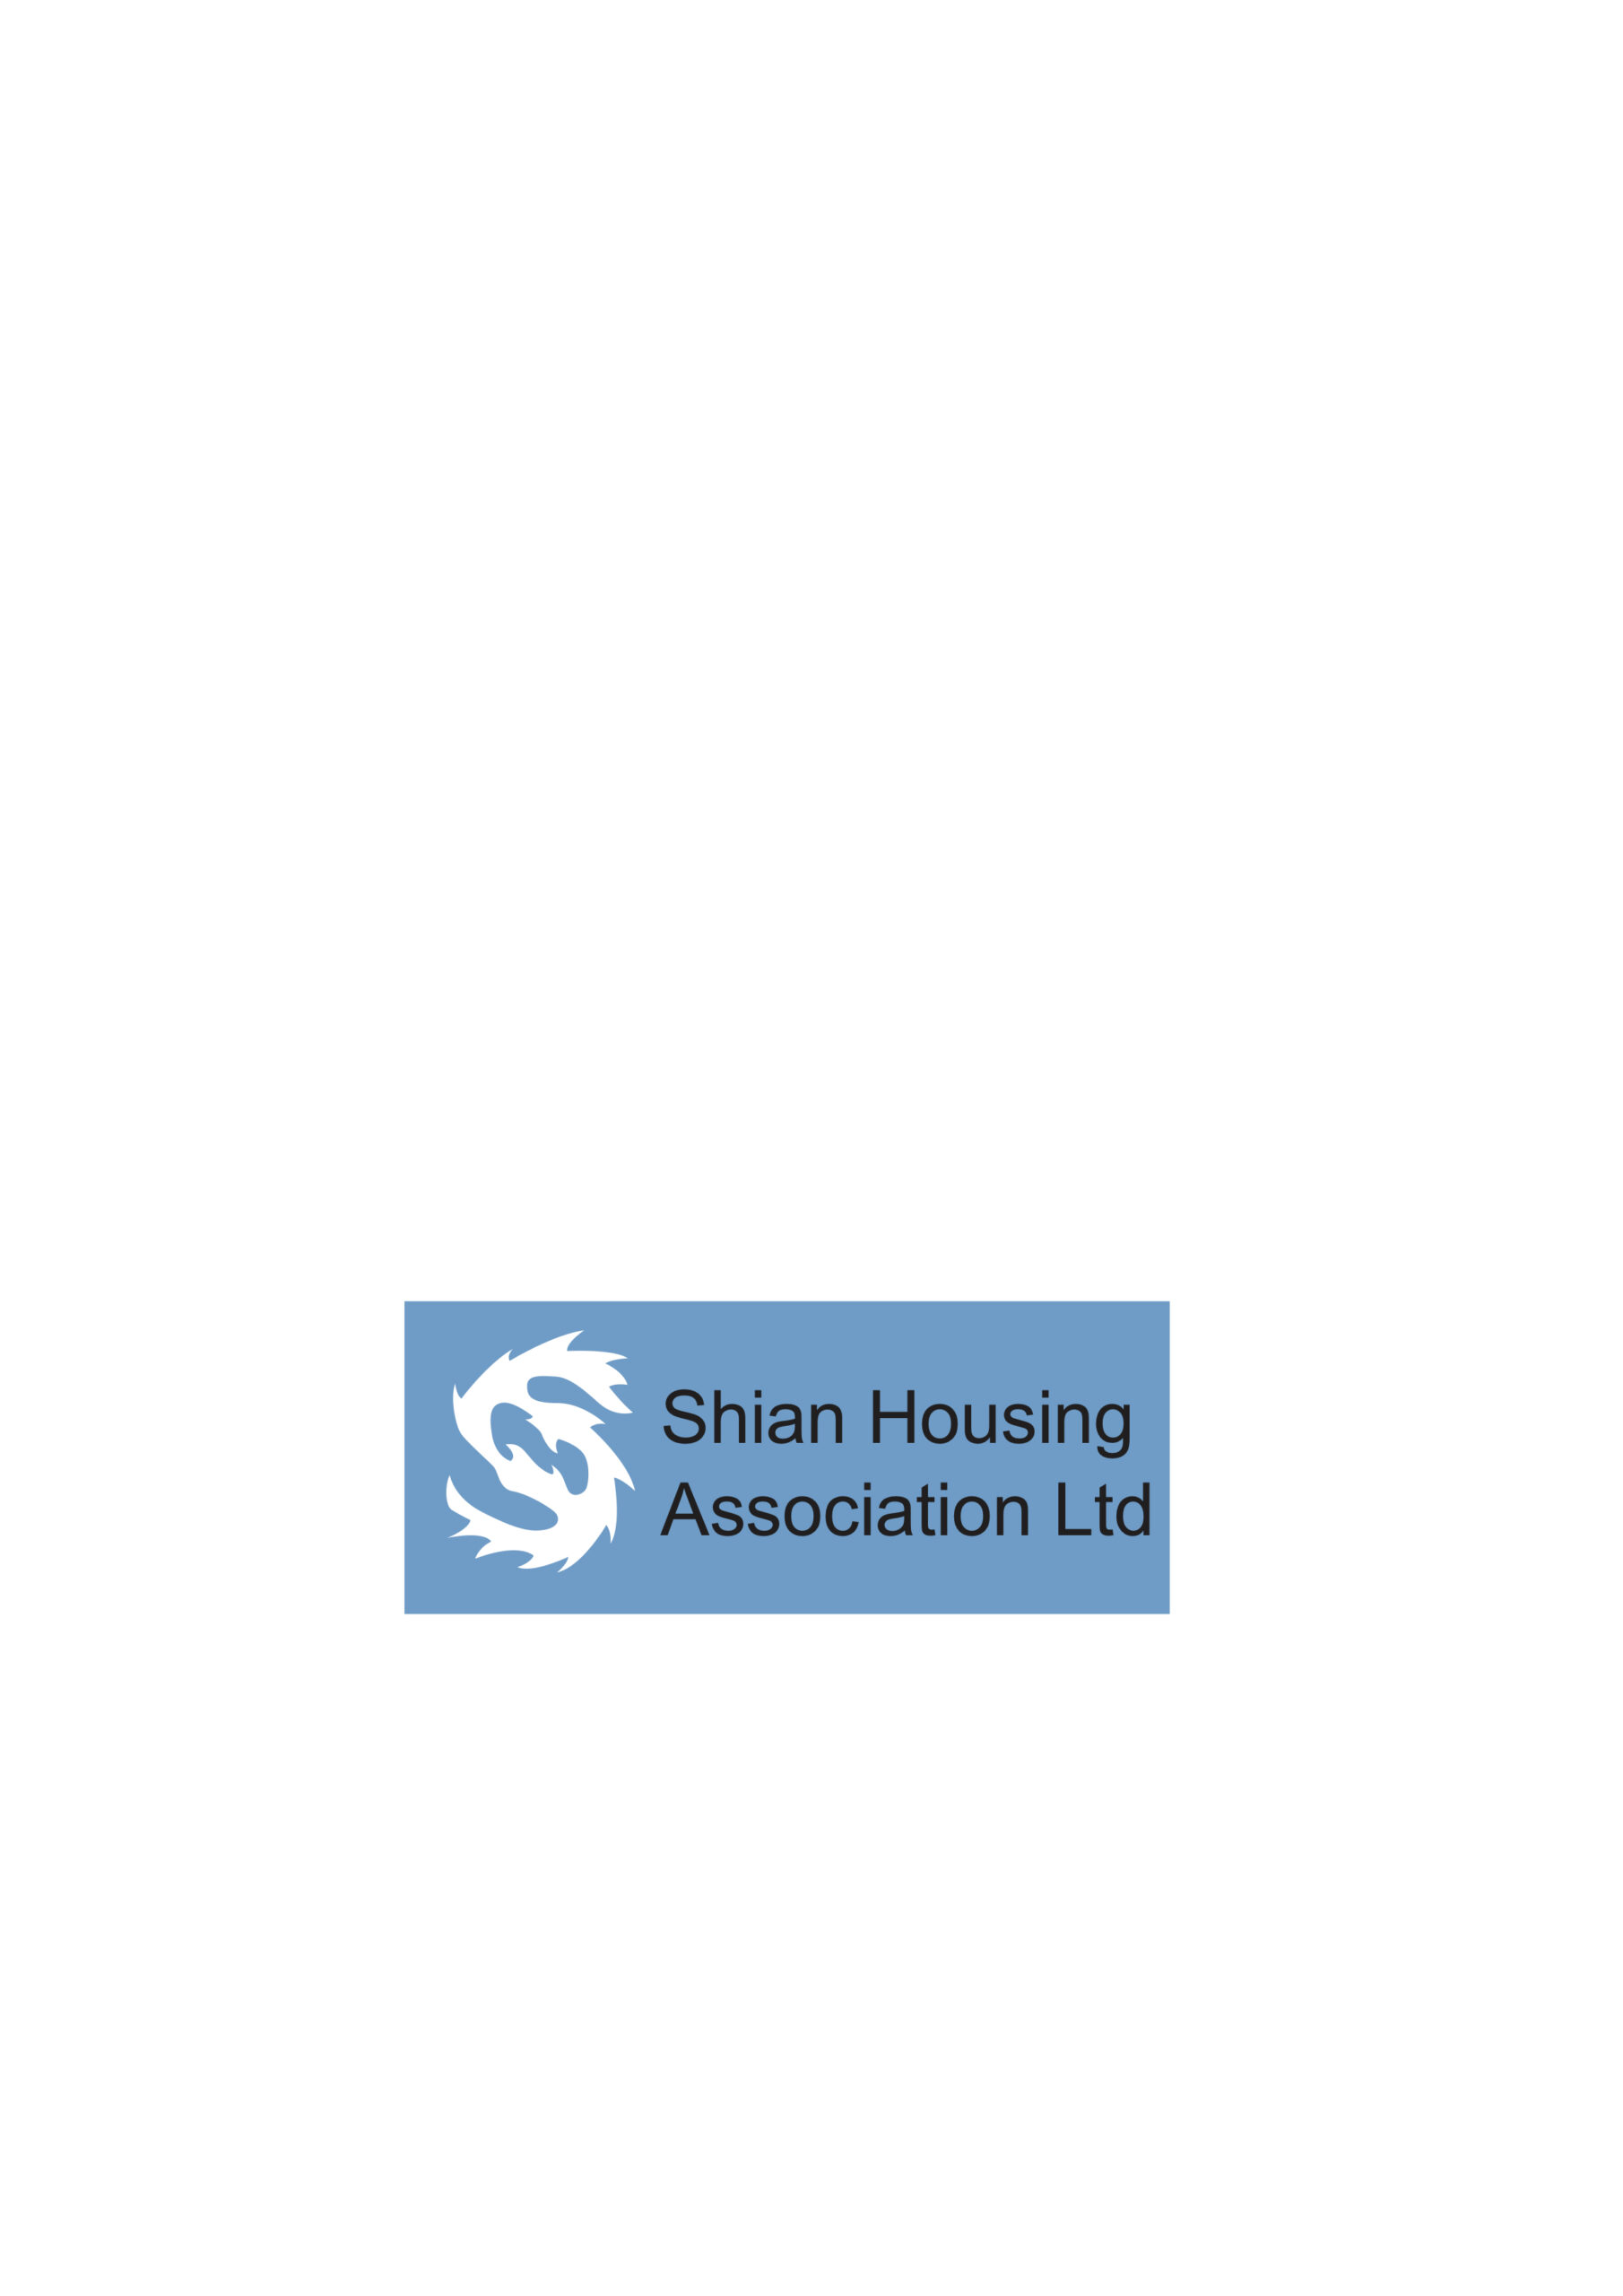 Shian Housing Association